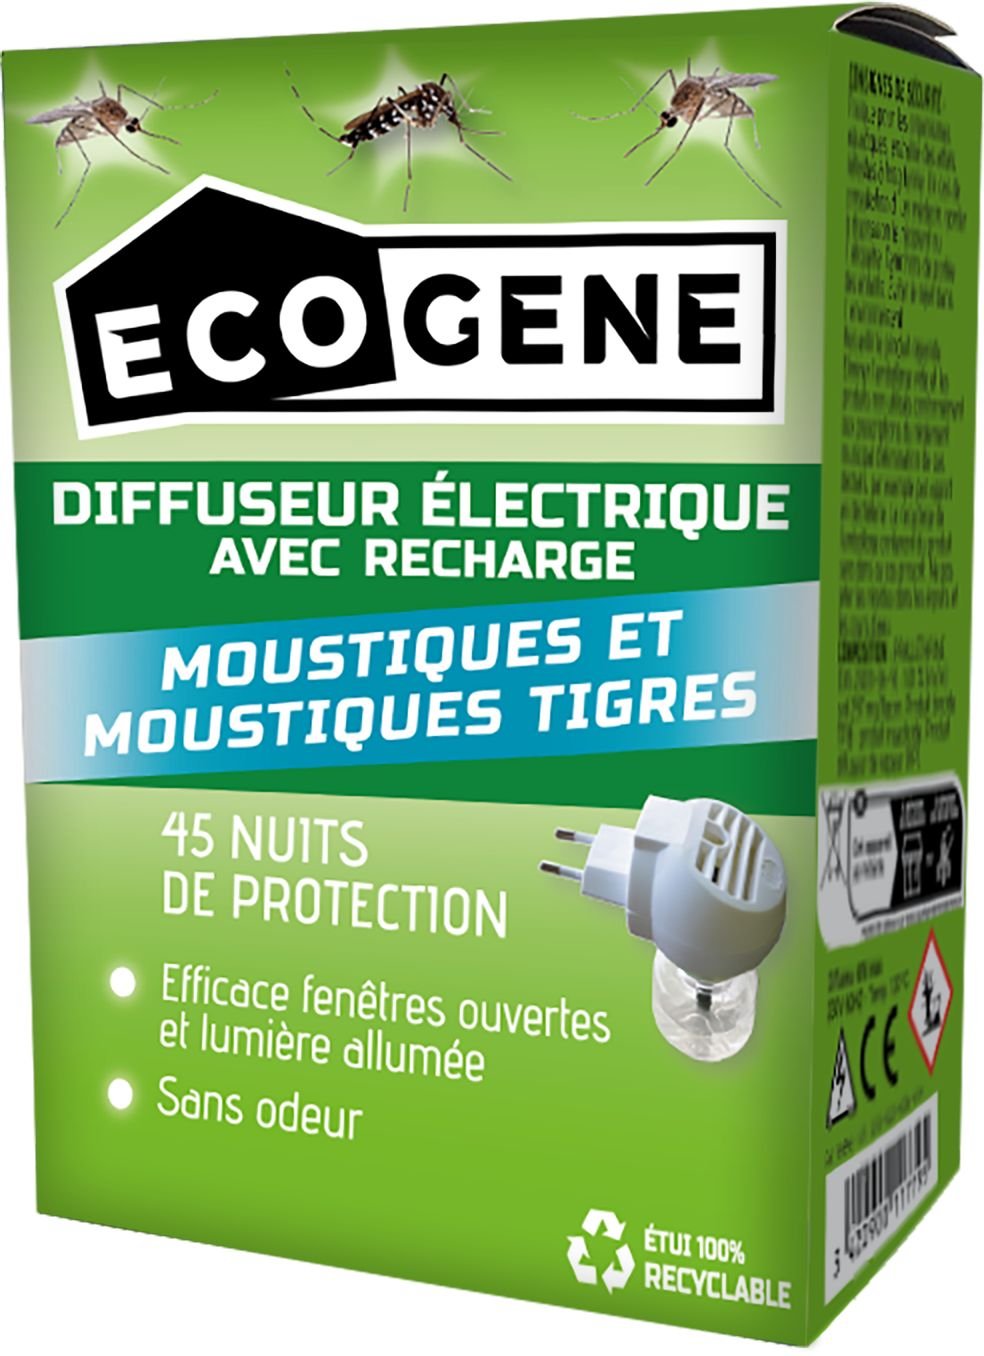 Diffuseur electrique + recharge anti-moustiques ecogene 30 ml -tp18